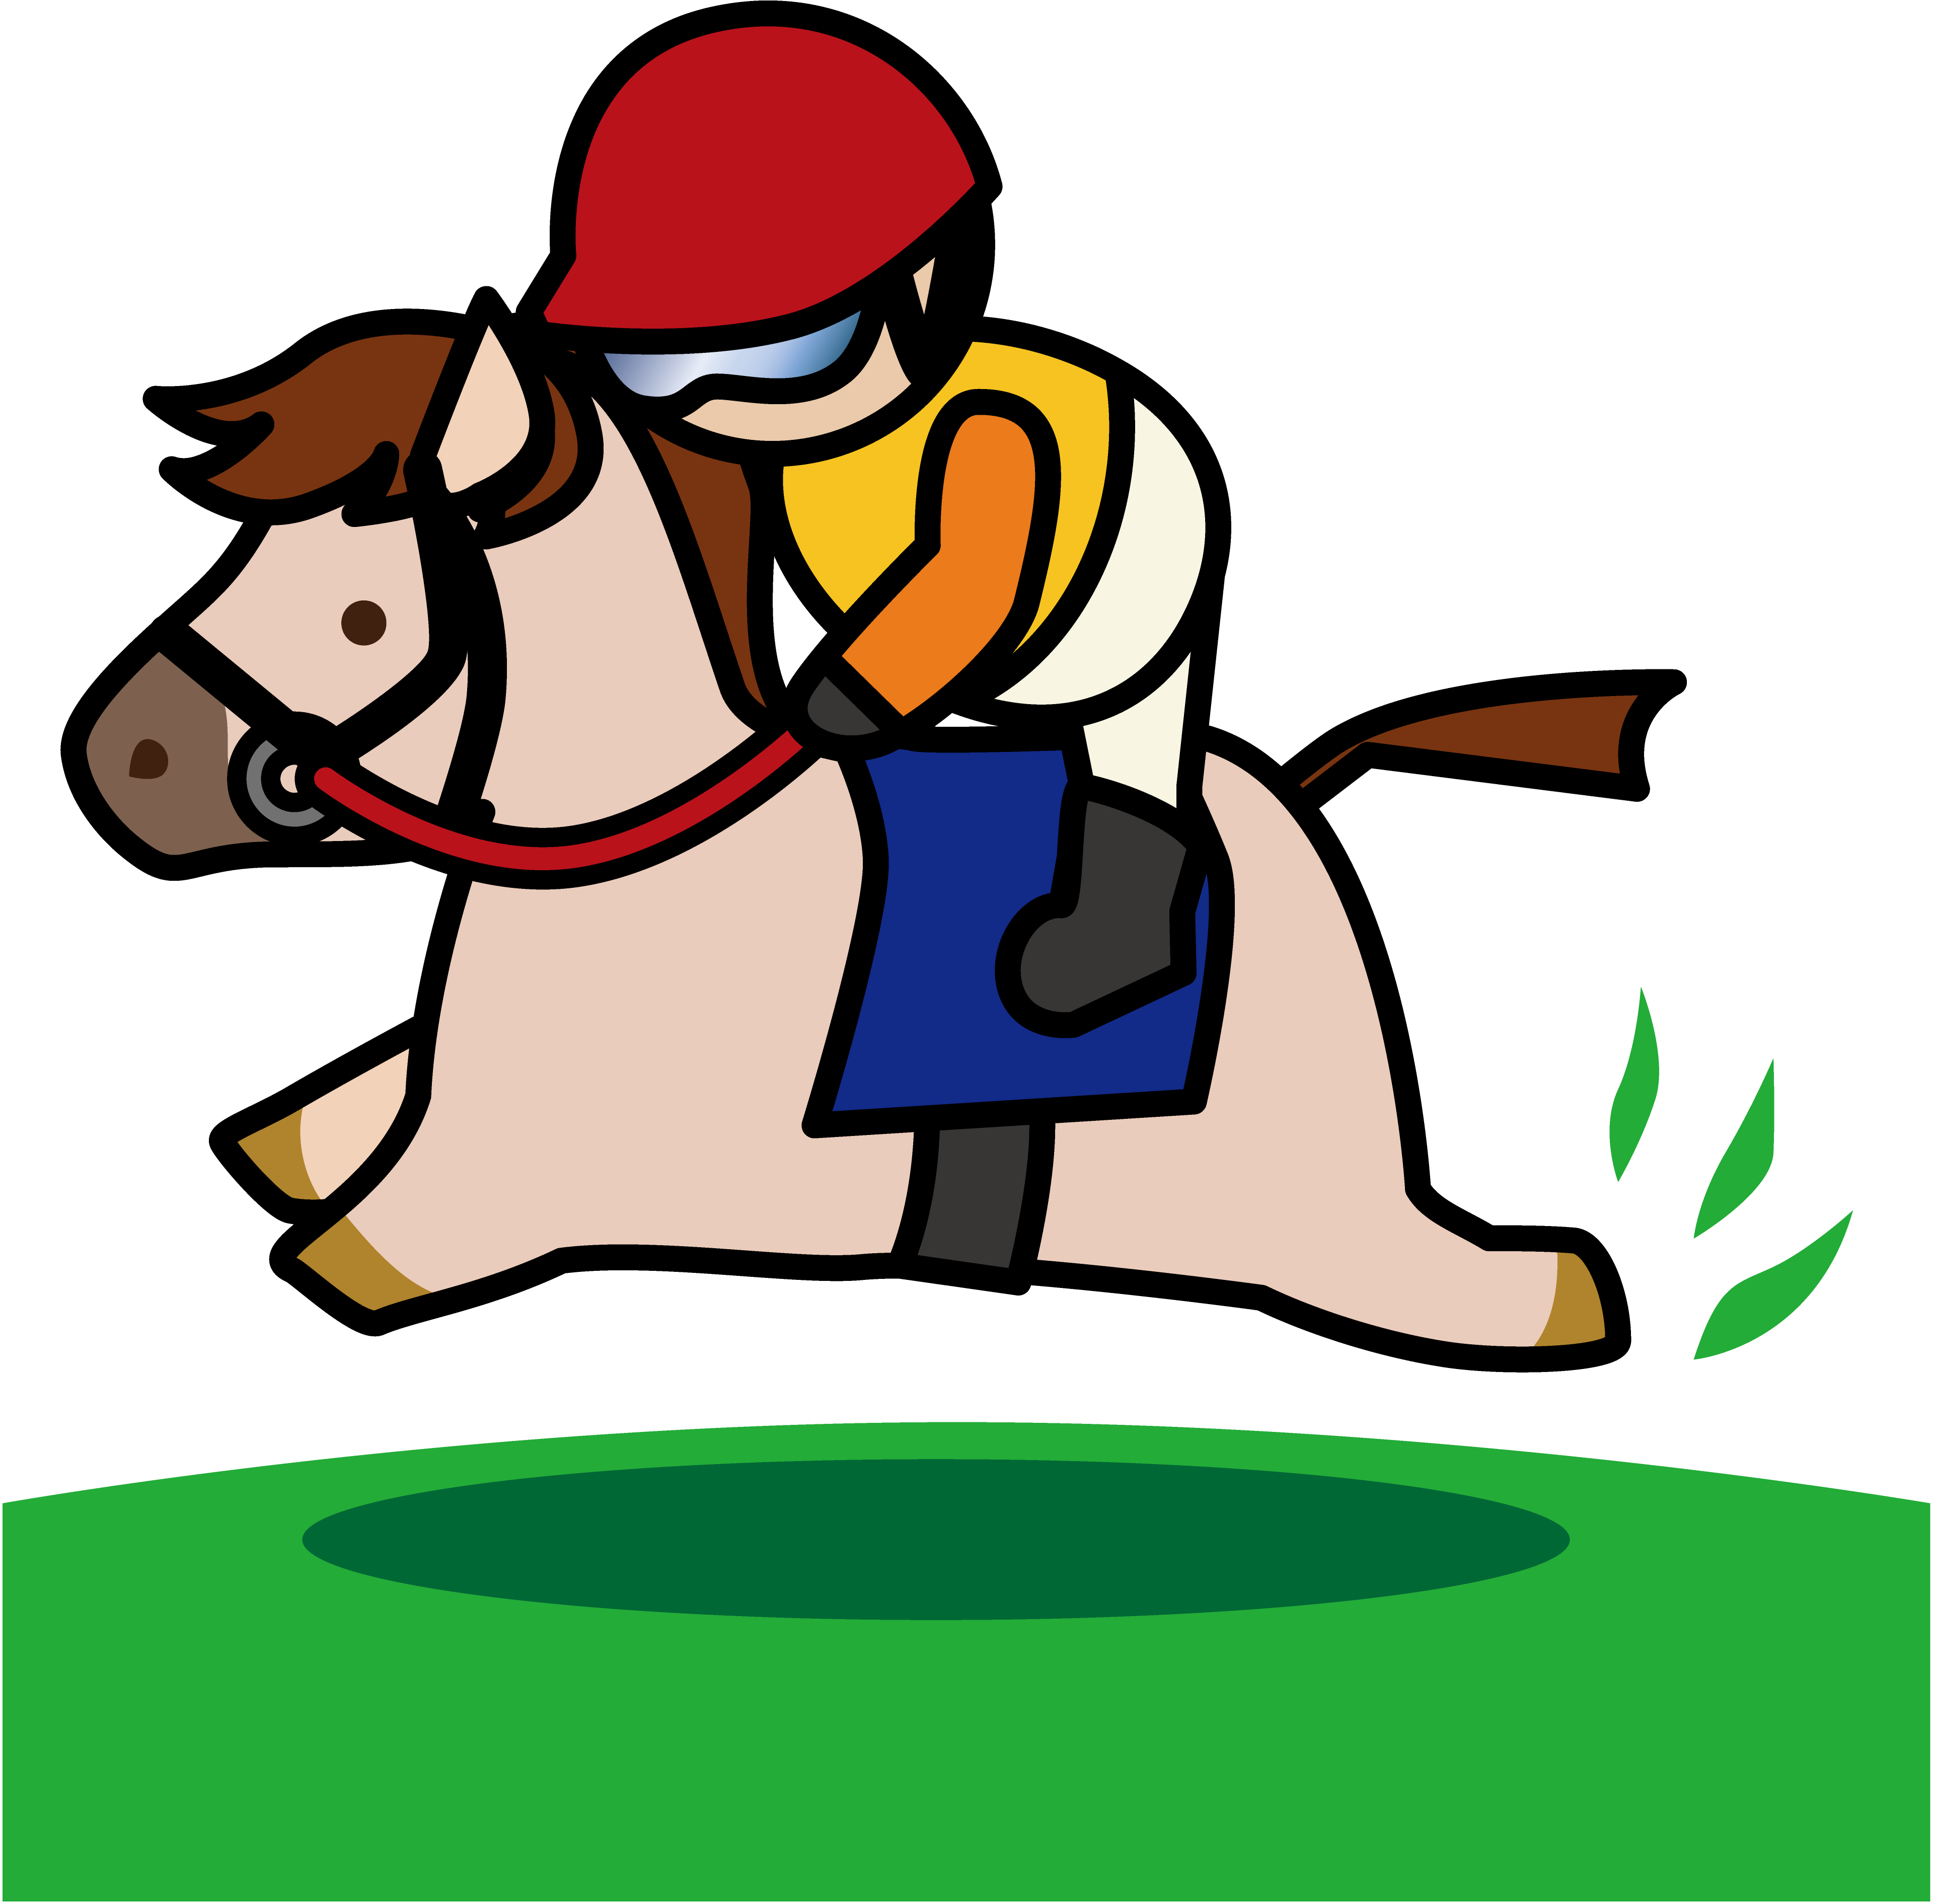 かわいい動物画像 無料ダウンロード競走馬 イラスト 簡単